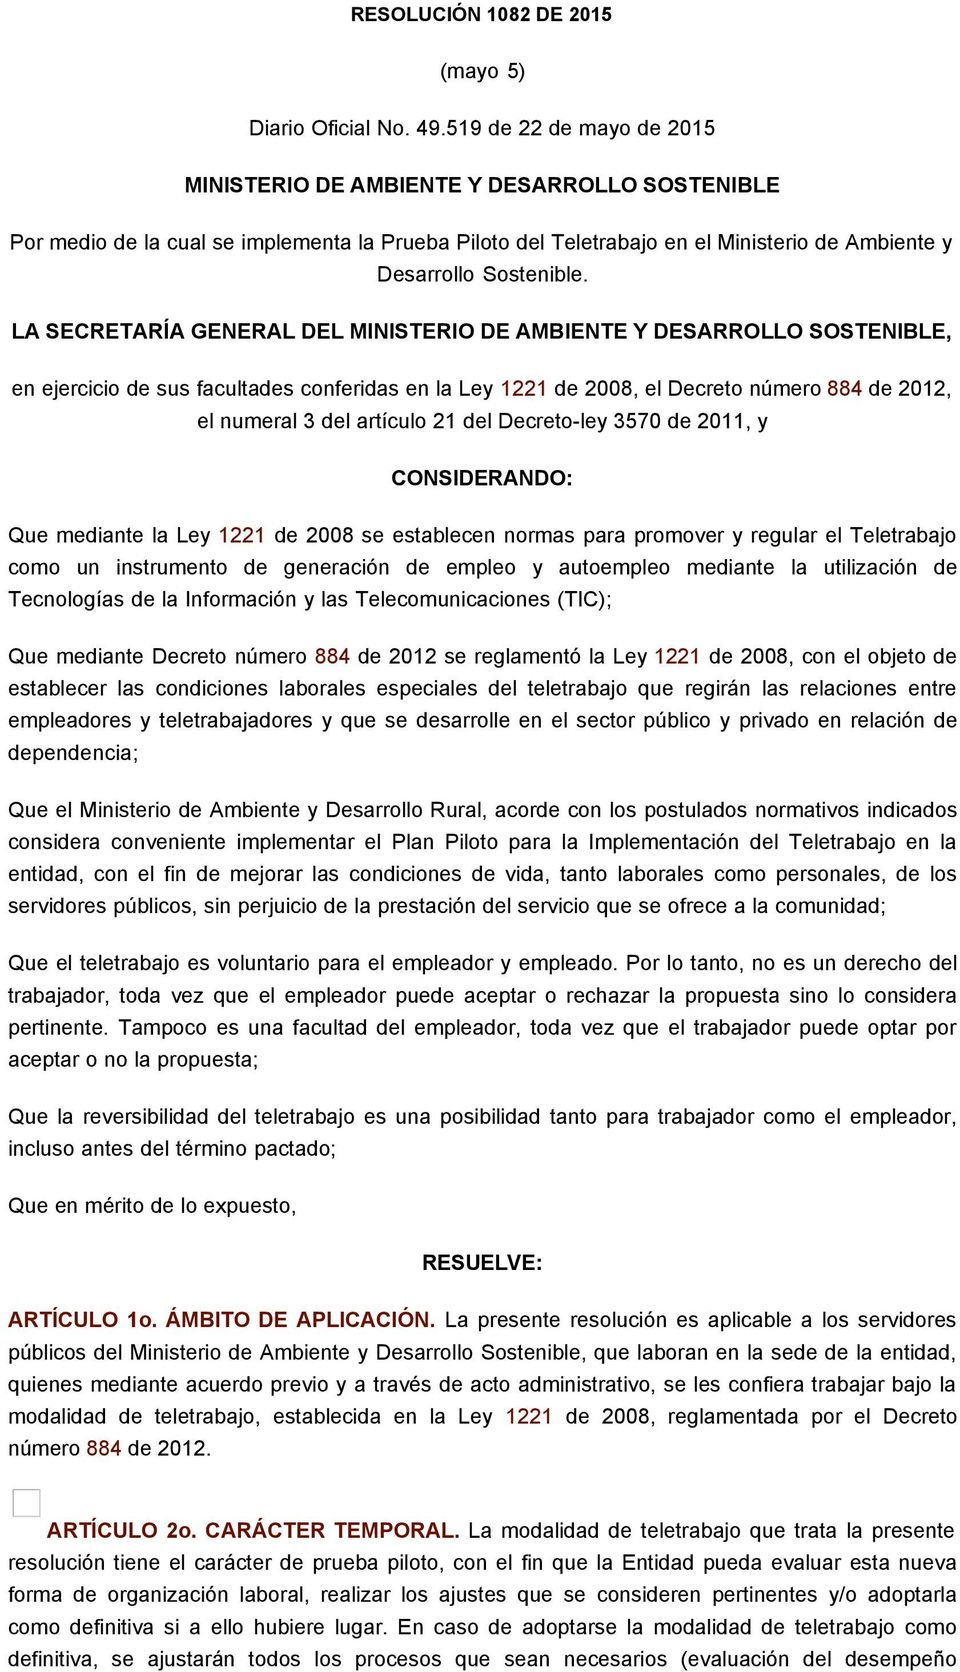 LA SECRETARÍA GENERAL DEL MINISTERIO DE AMBIENTE Y DESARROLLO SOSTENIBLE, en ejercicio de sus facultades conferidas en la Ley 1221 de 2008, el Decreto número 884 de 2012, el numeral 3 del artículo 21